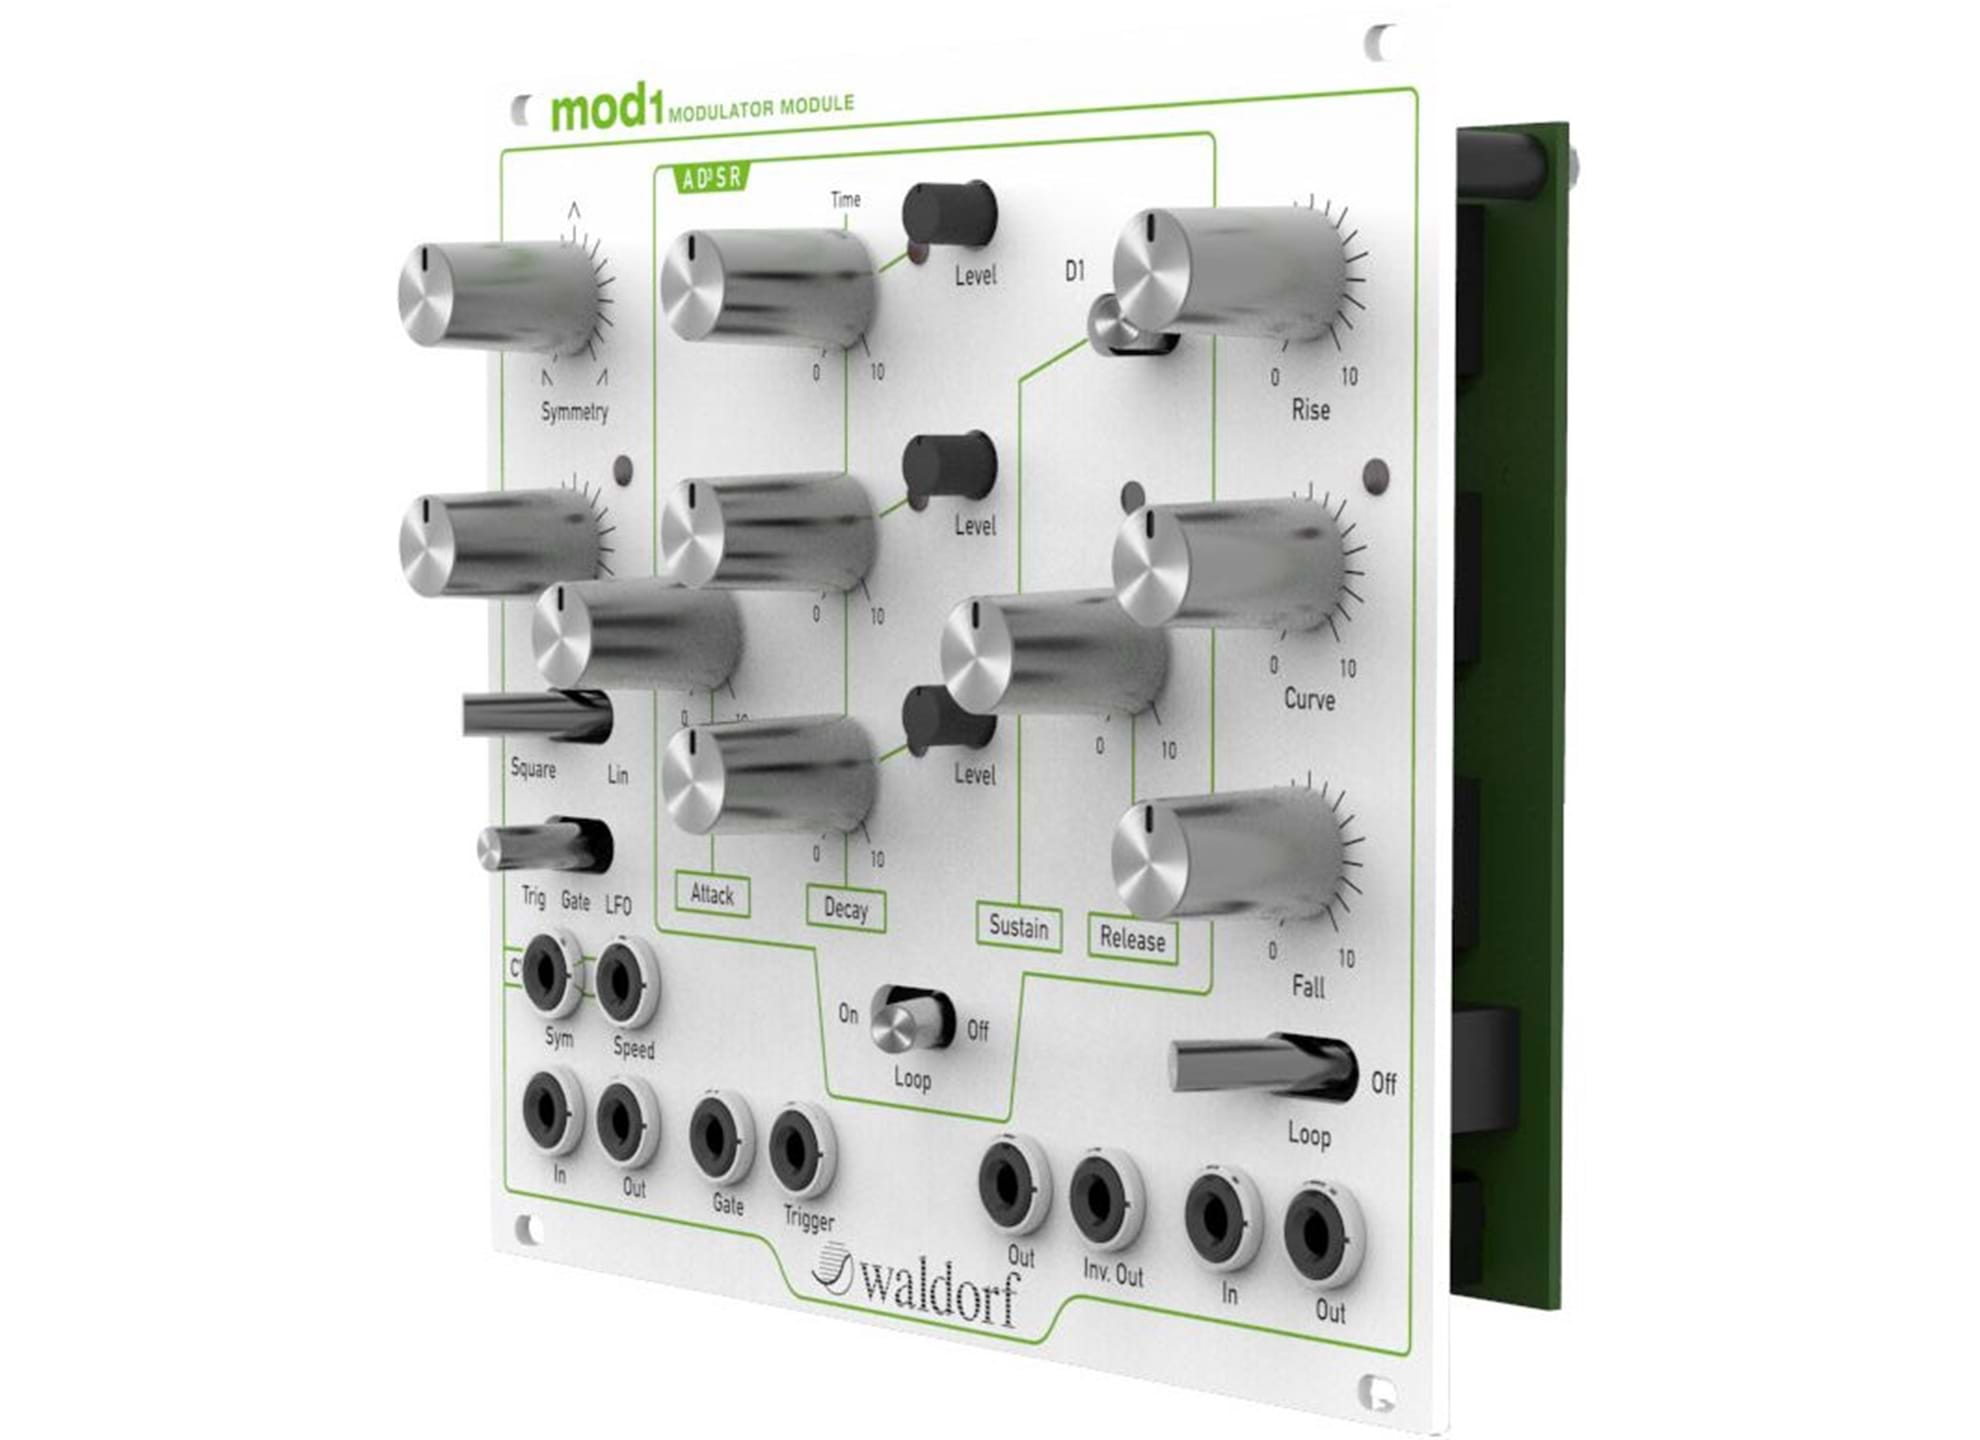 mod1 Modulator Module